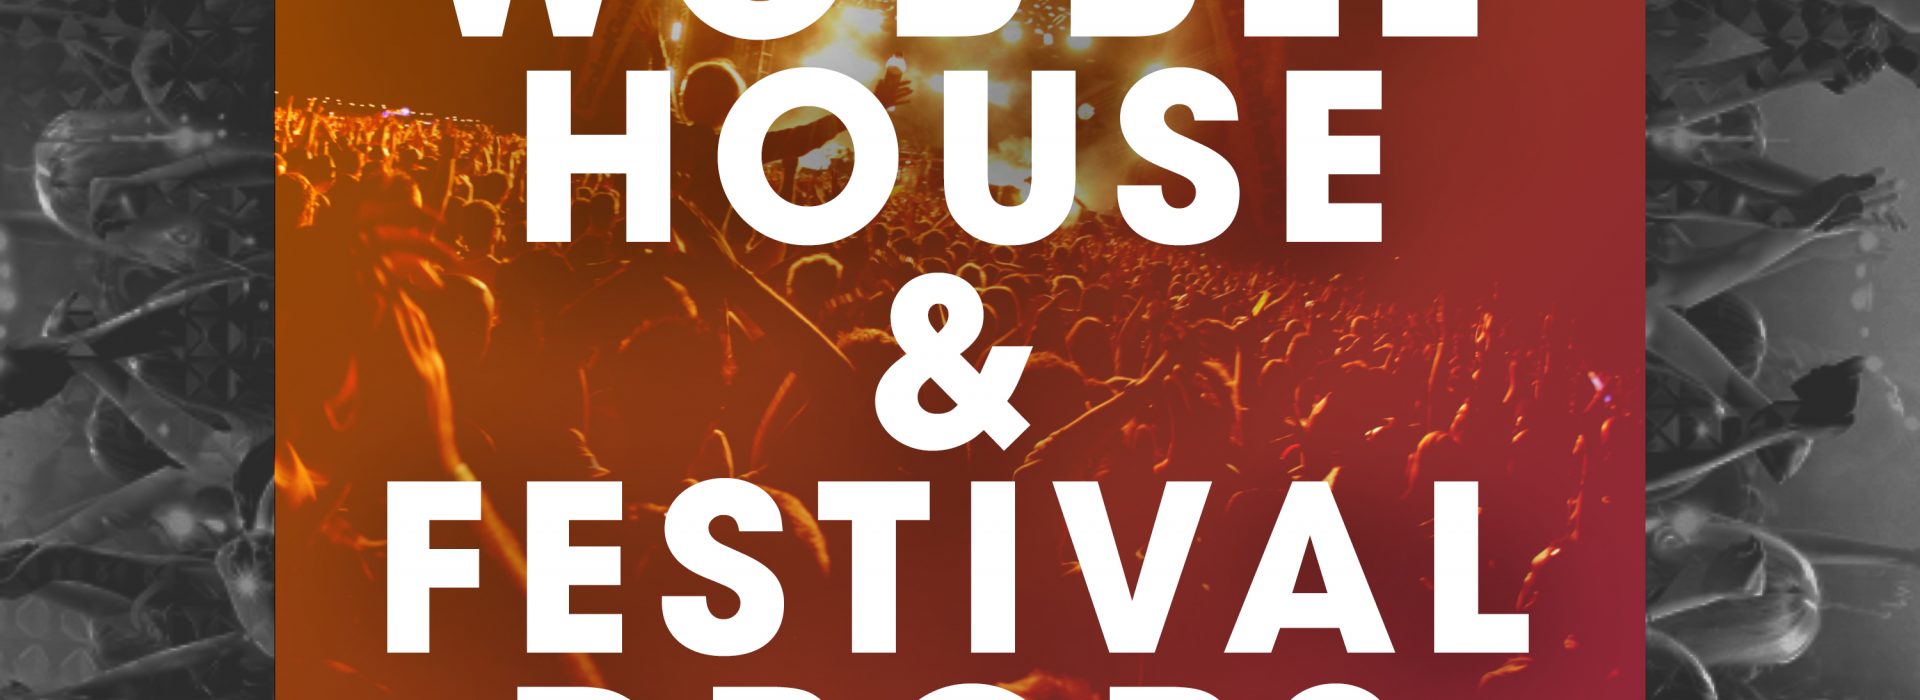 Wobble House & Festival Drops – OUT NOW!!